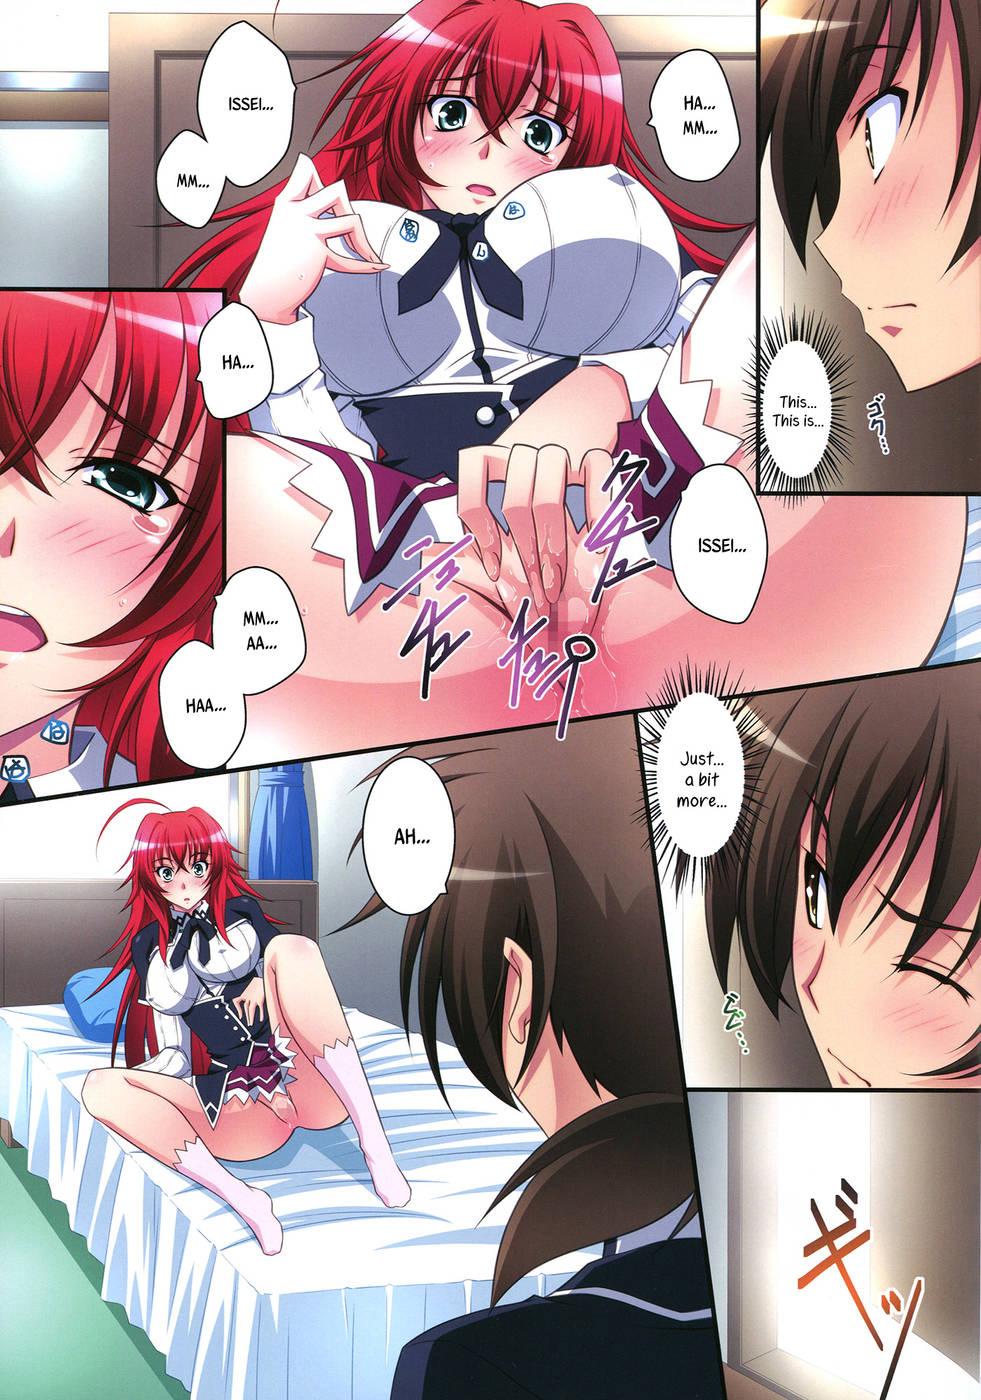 otro manga hentai ahora de hihg schol dxd Scarlet Princess